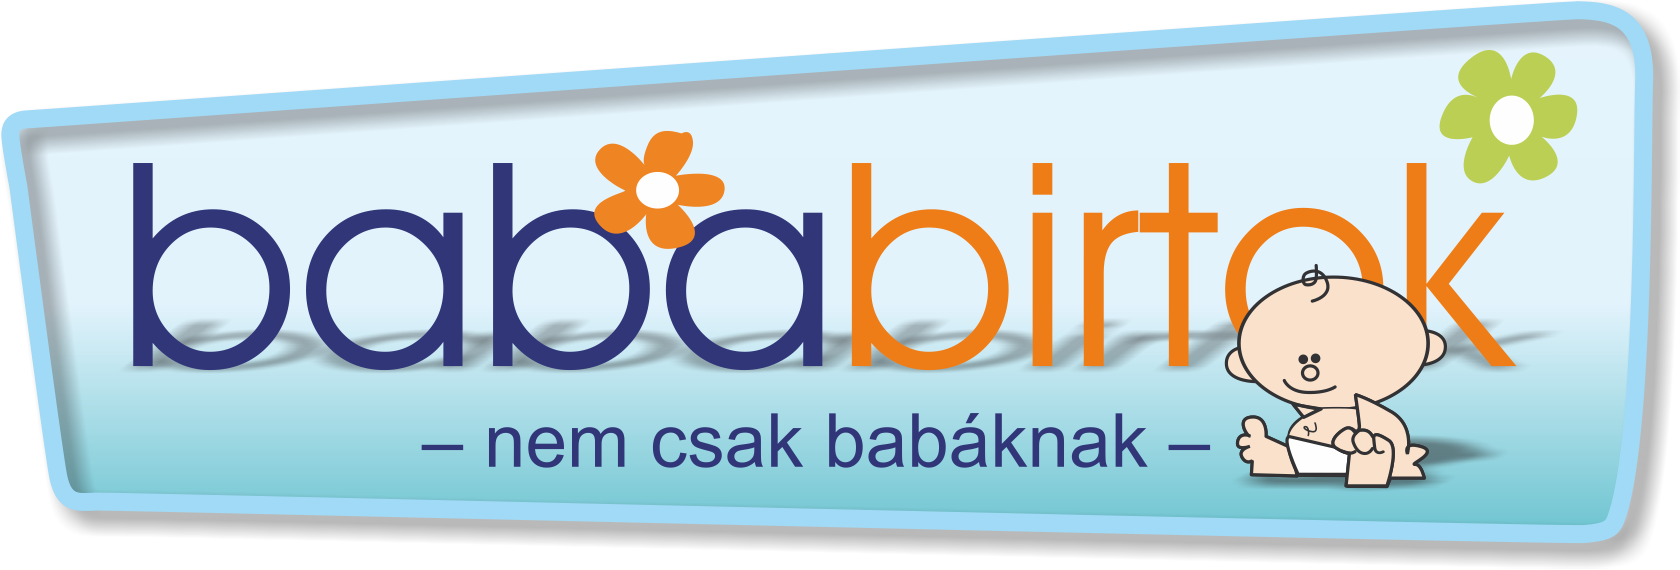 Bababirtok Egyesület